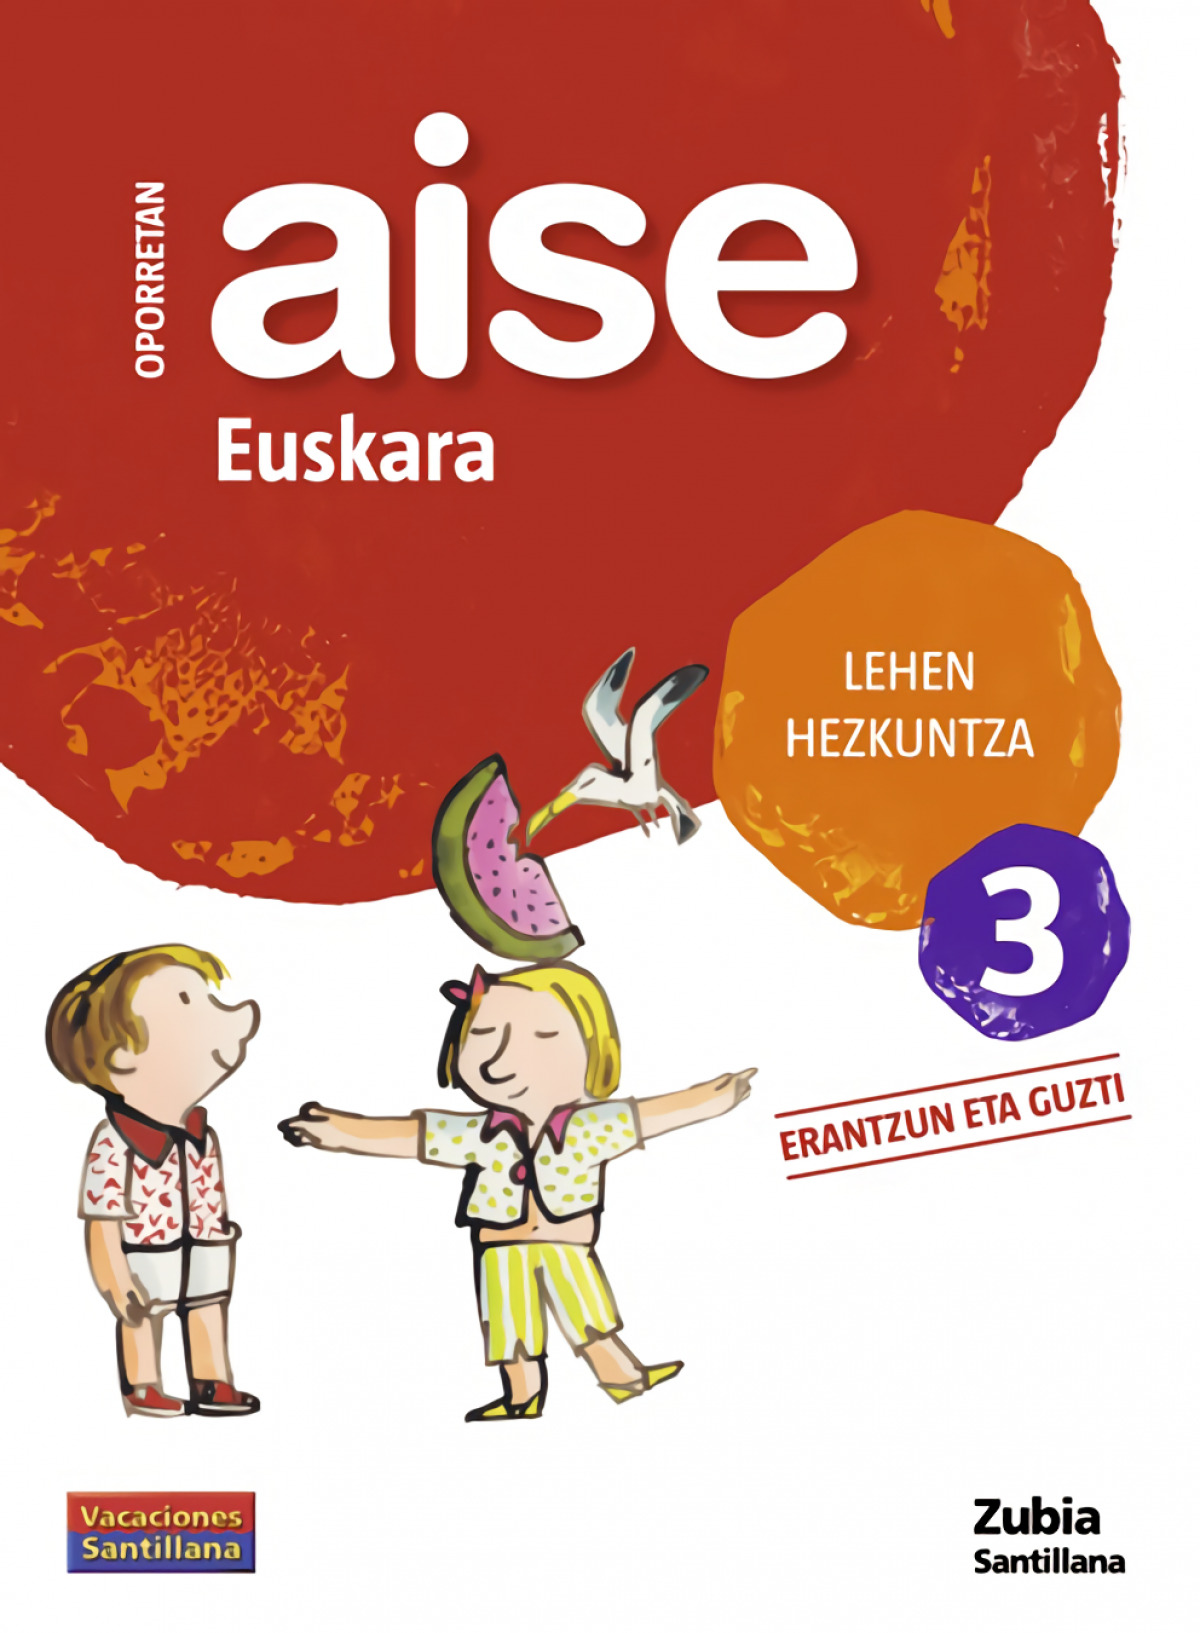 Aise euskara 3 lehen hezkuntza oporretan 2010